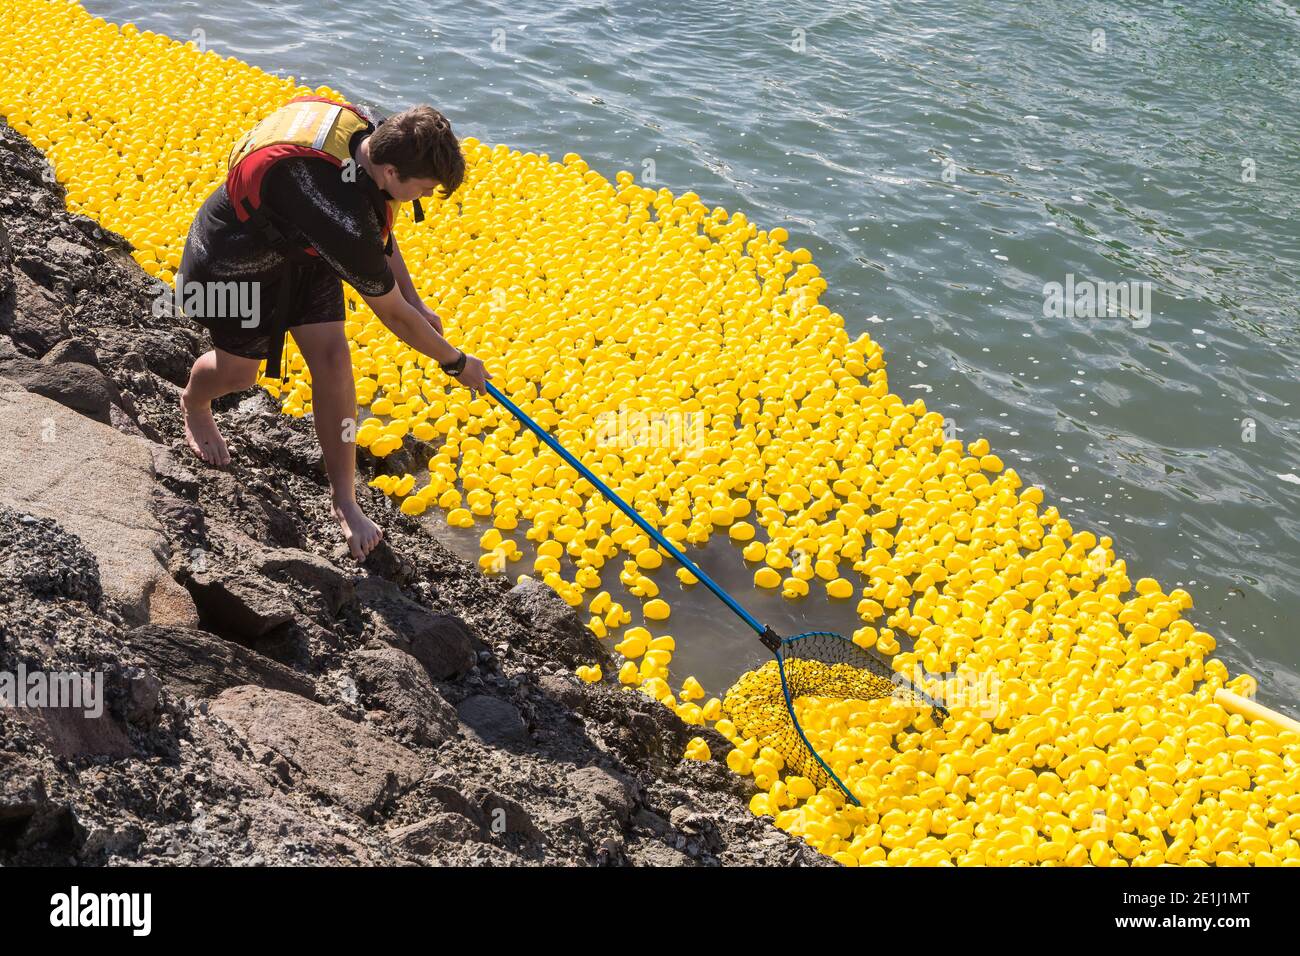 Un uomo con una rete raccoglie centinaia di anatre giocattolo che galleggiano sull'acqua dopo una corsa di anatre di gomma per carità. Porto di Tauranga, Nuova Zelanda Foto Stock